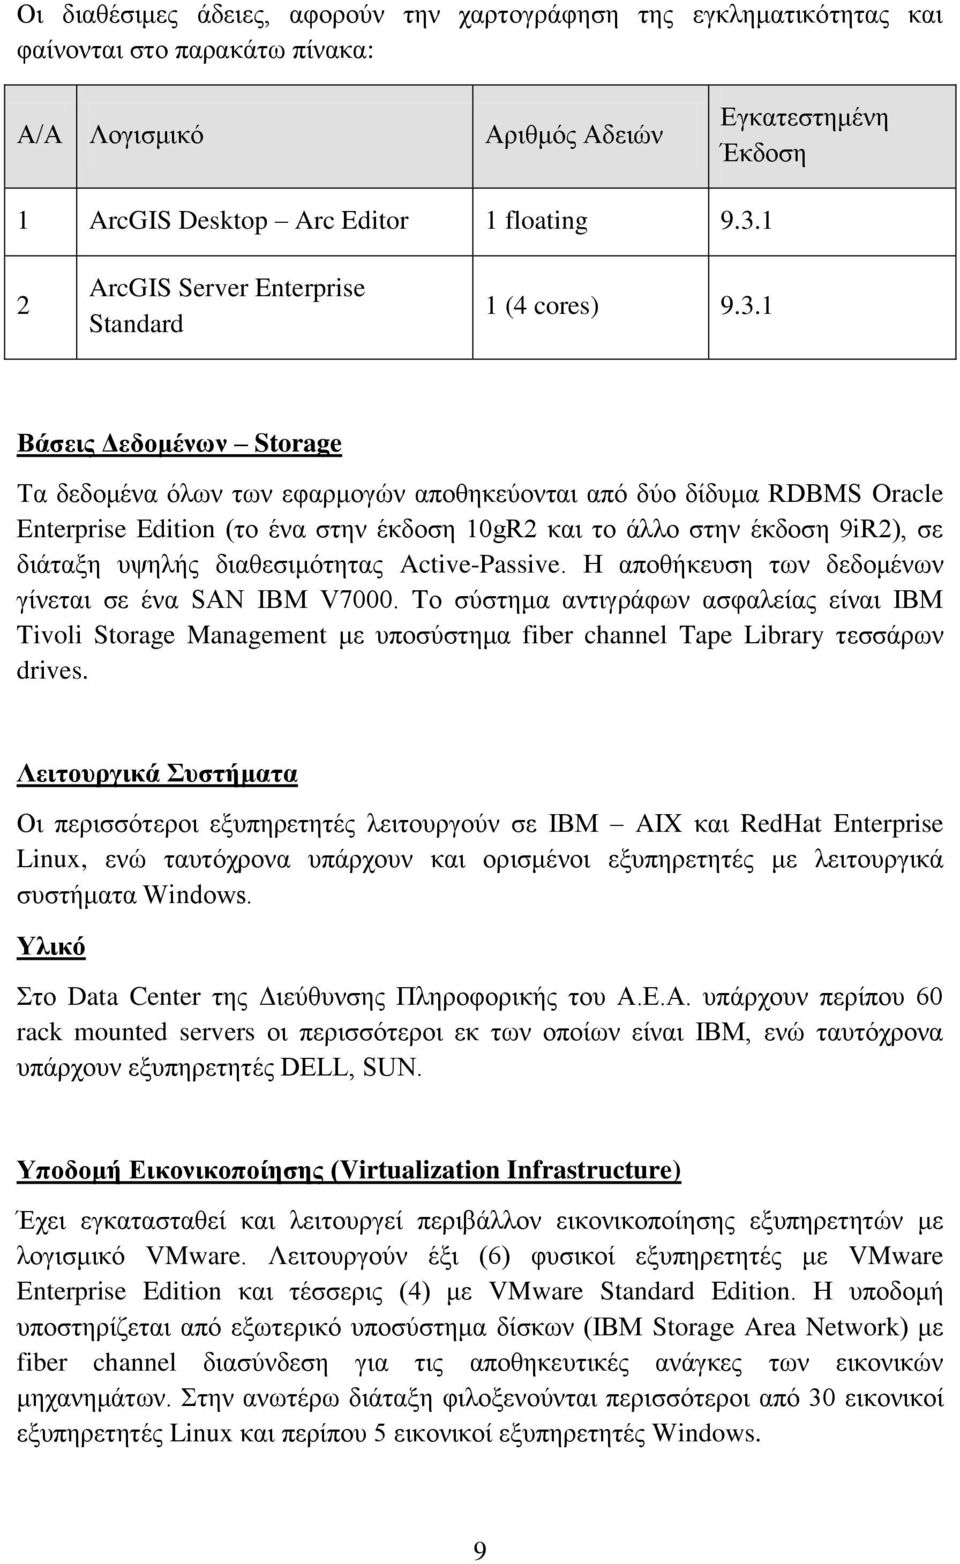 1 Βάζεηο Γεδνκέλσλ Storage Σα δεδνκϋλα φισλ ησλ εθαξκνγψλ απνζεθεχνληαη απφ δχν δέδπκα RDBMS Oracle Enterprise Edition (ην Ϋλα ζηελ Ϋθδνζε 10gR2 θαη ην Ϊιιν ζηελ Ϋθδνζε 9iR2), ζε δηϊηαμε πςειάο